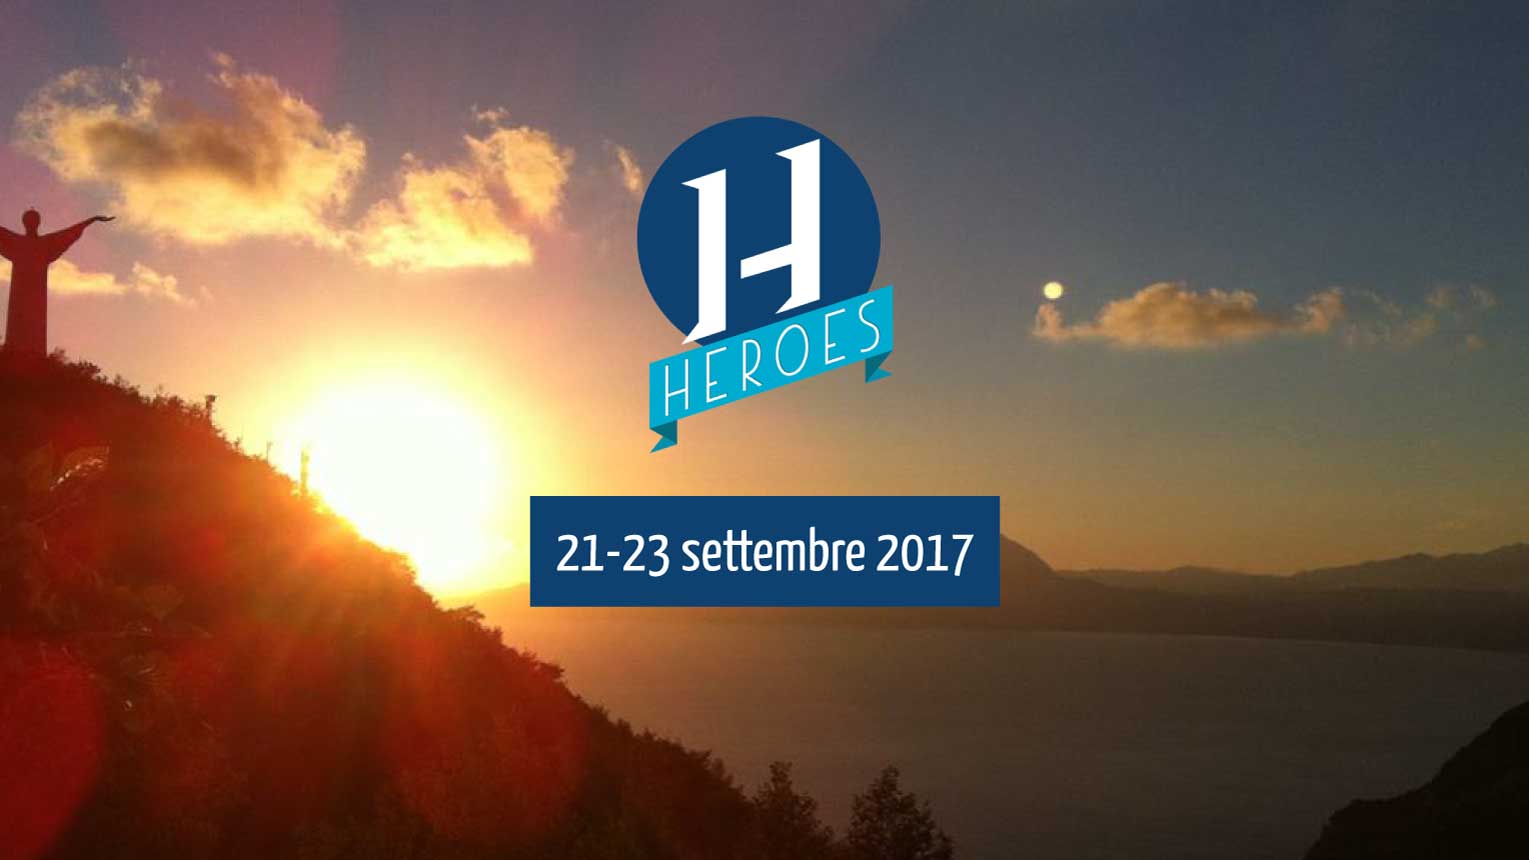 Heroes 2017 è il primo Coinnovation Euro-Mediterranean Festival